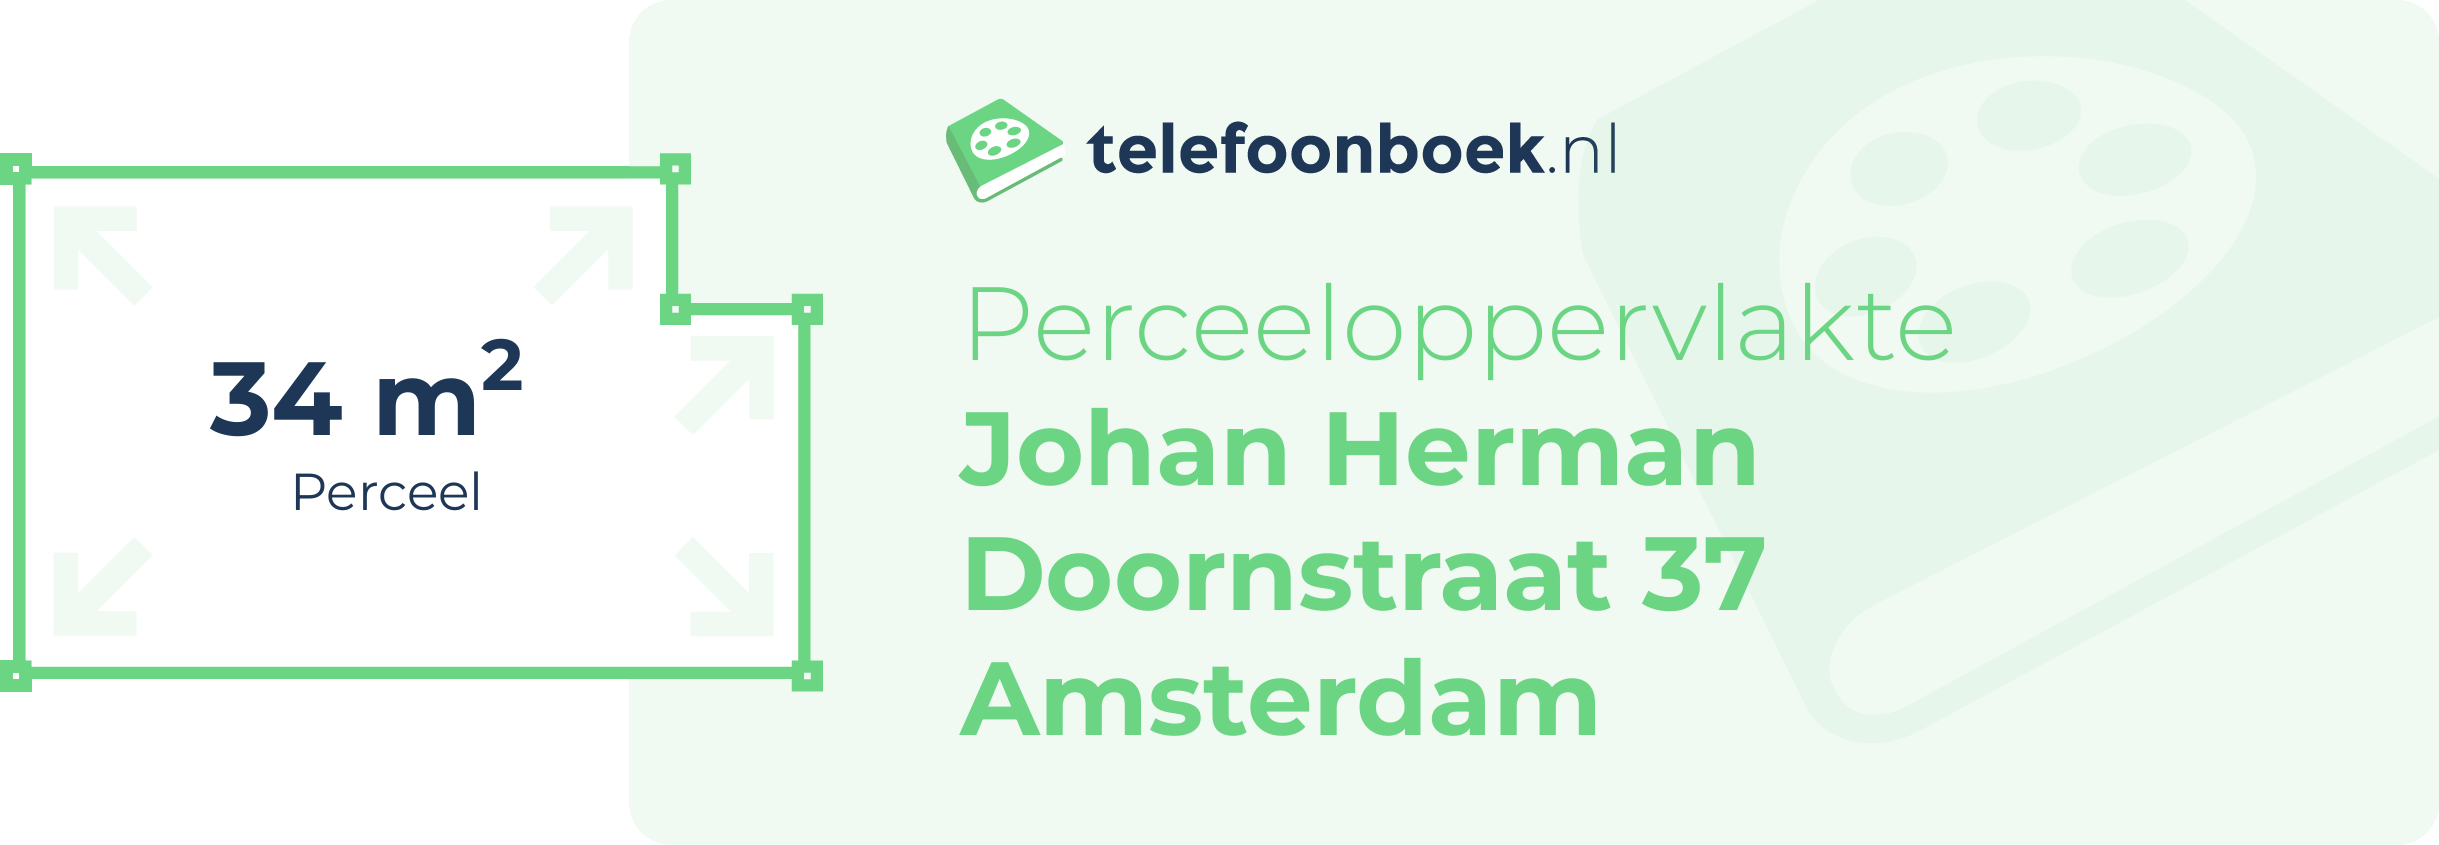 Perceeloppervlakte Johan Herman Doornstraat 37 Amsterdam